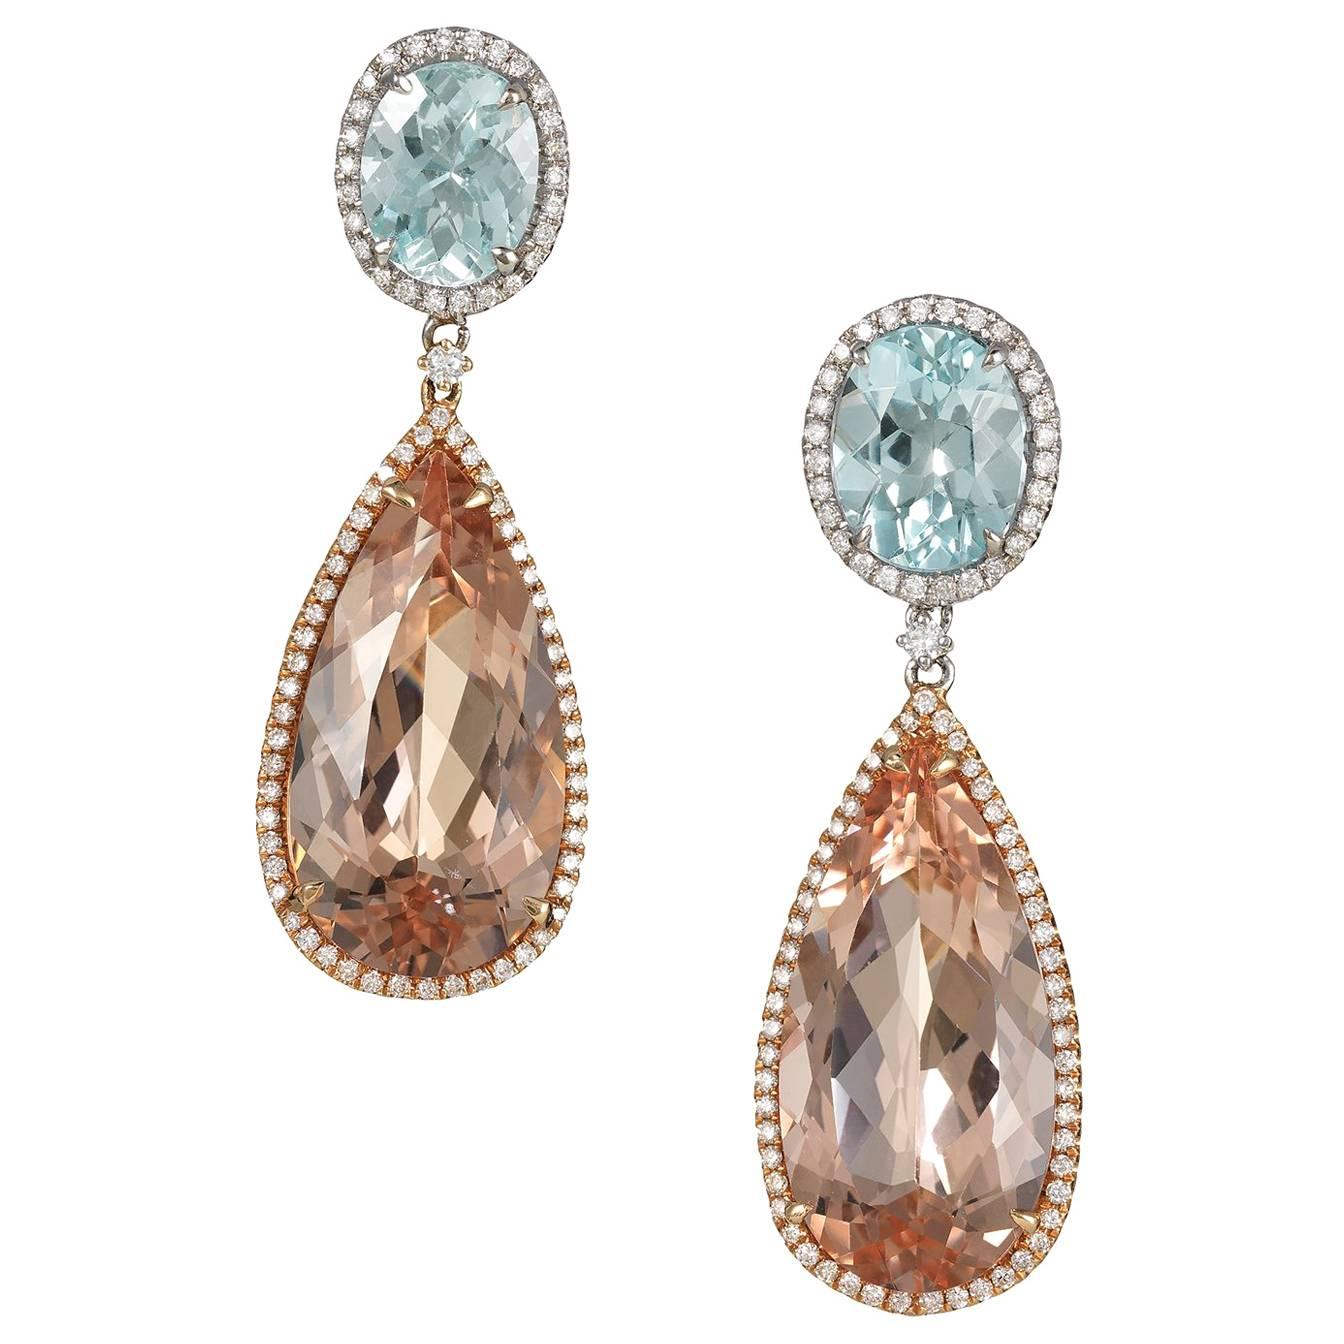 Morganite, Aquamarine and Diamond Rose Gold Earrings